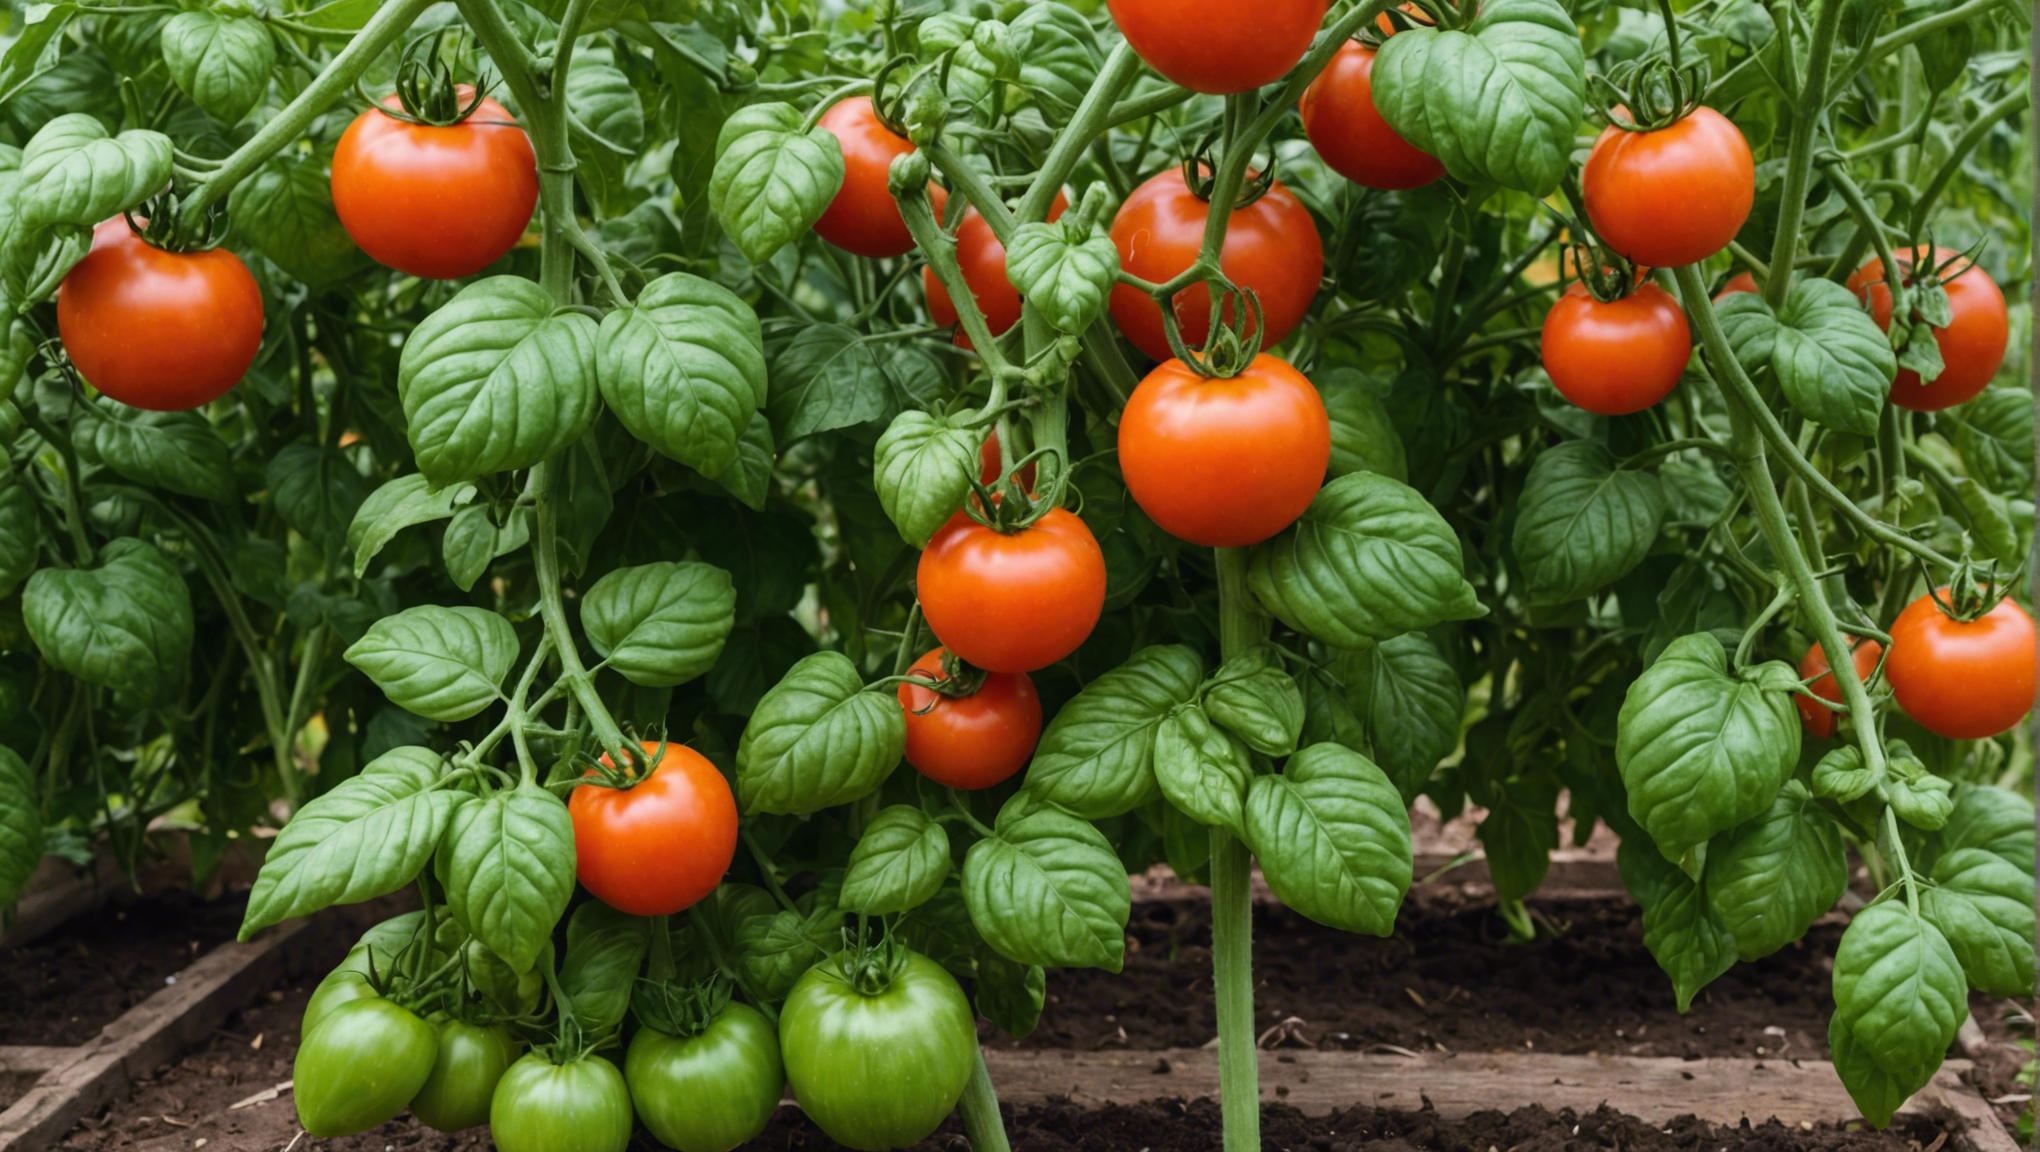 découvrez comment protéger vos plants de tomates du vent au potager pour favoriser leur croissance et récolter des fruits sains et savoureux. conseils et astuces pratiques pour une culture réussie.